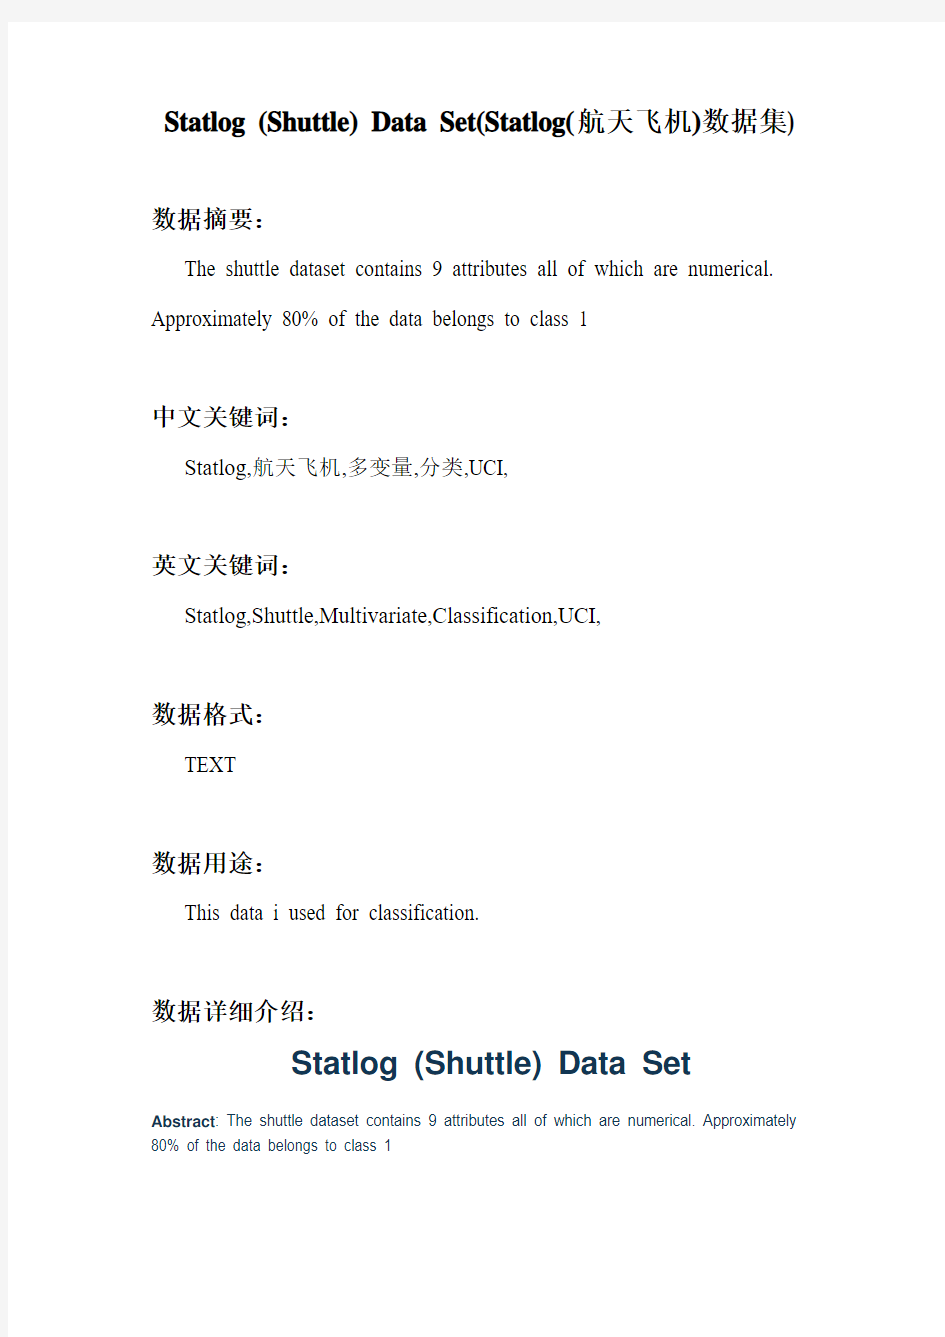 机器学习_Statlog (Shuttle) Data Set(Statlog(航天飞机)数据集)